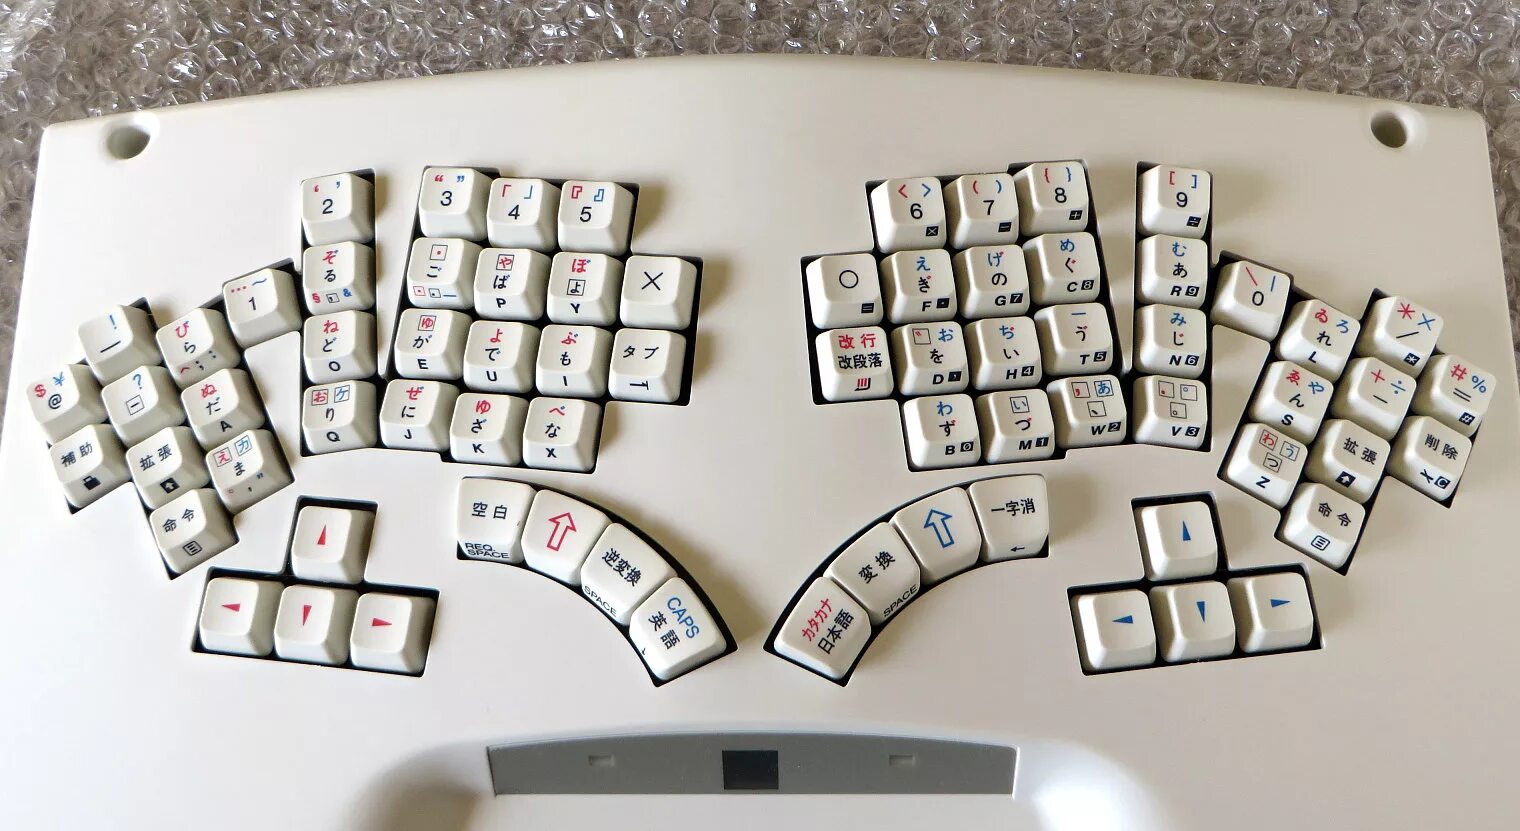 В стране клавиш. Китайская раскладка клавиатуры. Китайская раскладка клавиатуры компьютера. Японская раскладка клавиатуры. Китайская клавиатура для компьютера с иероглифами.